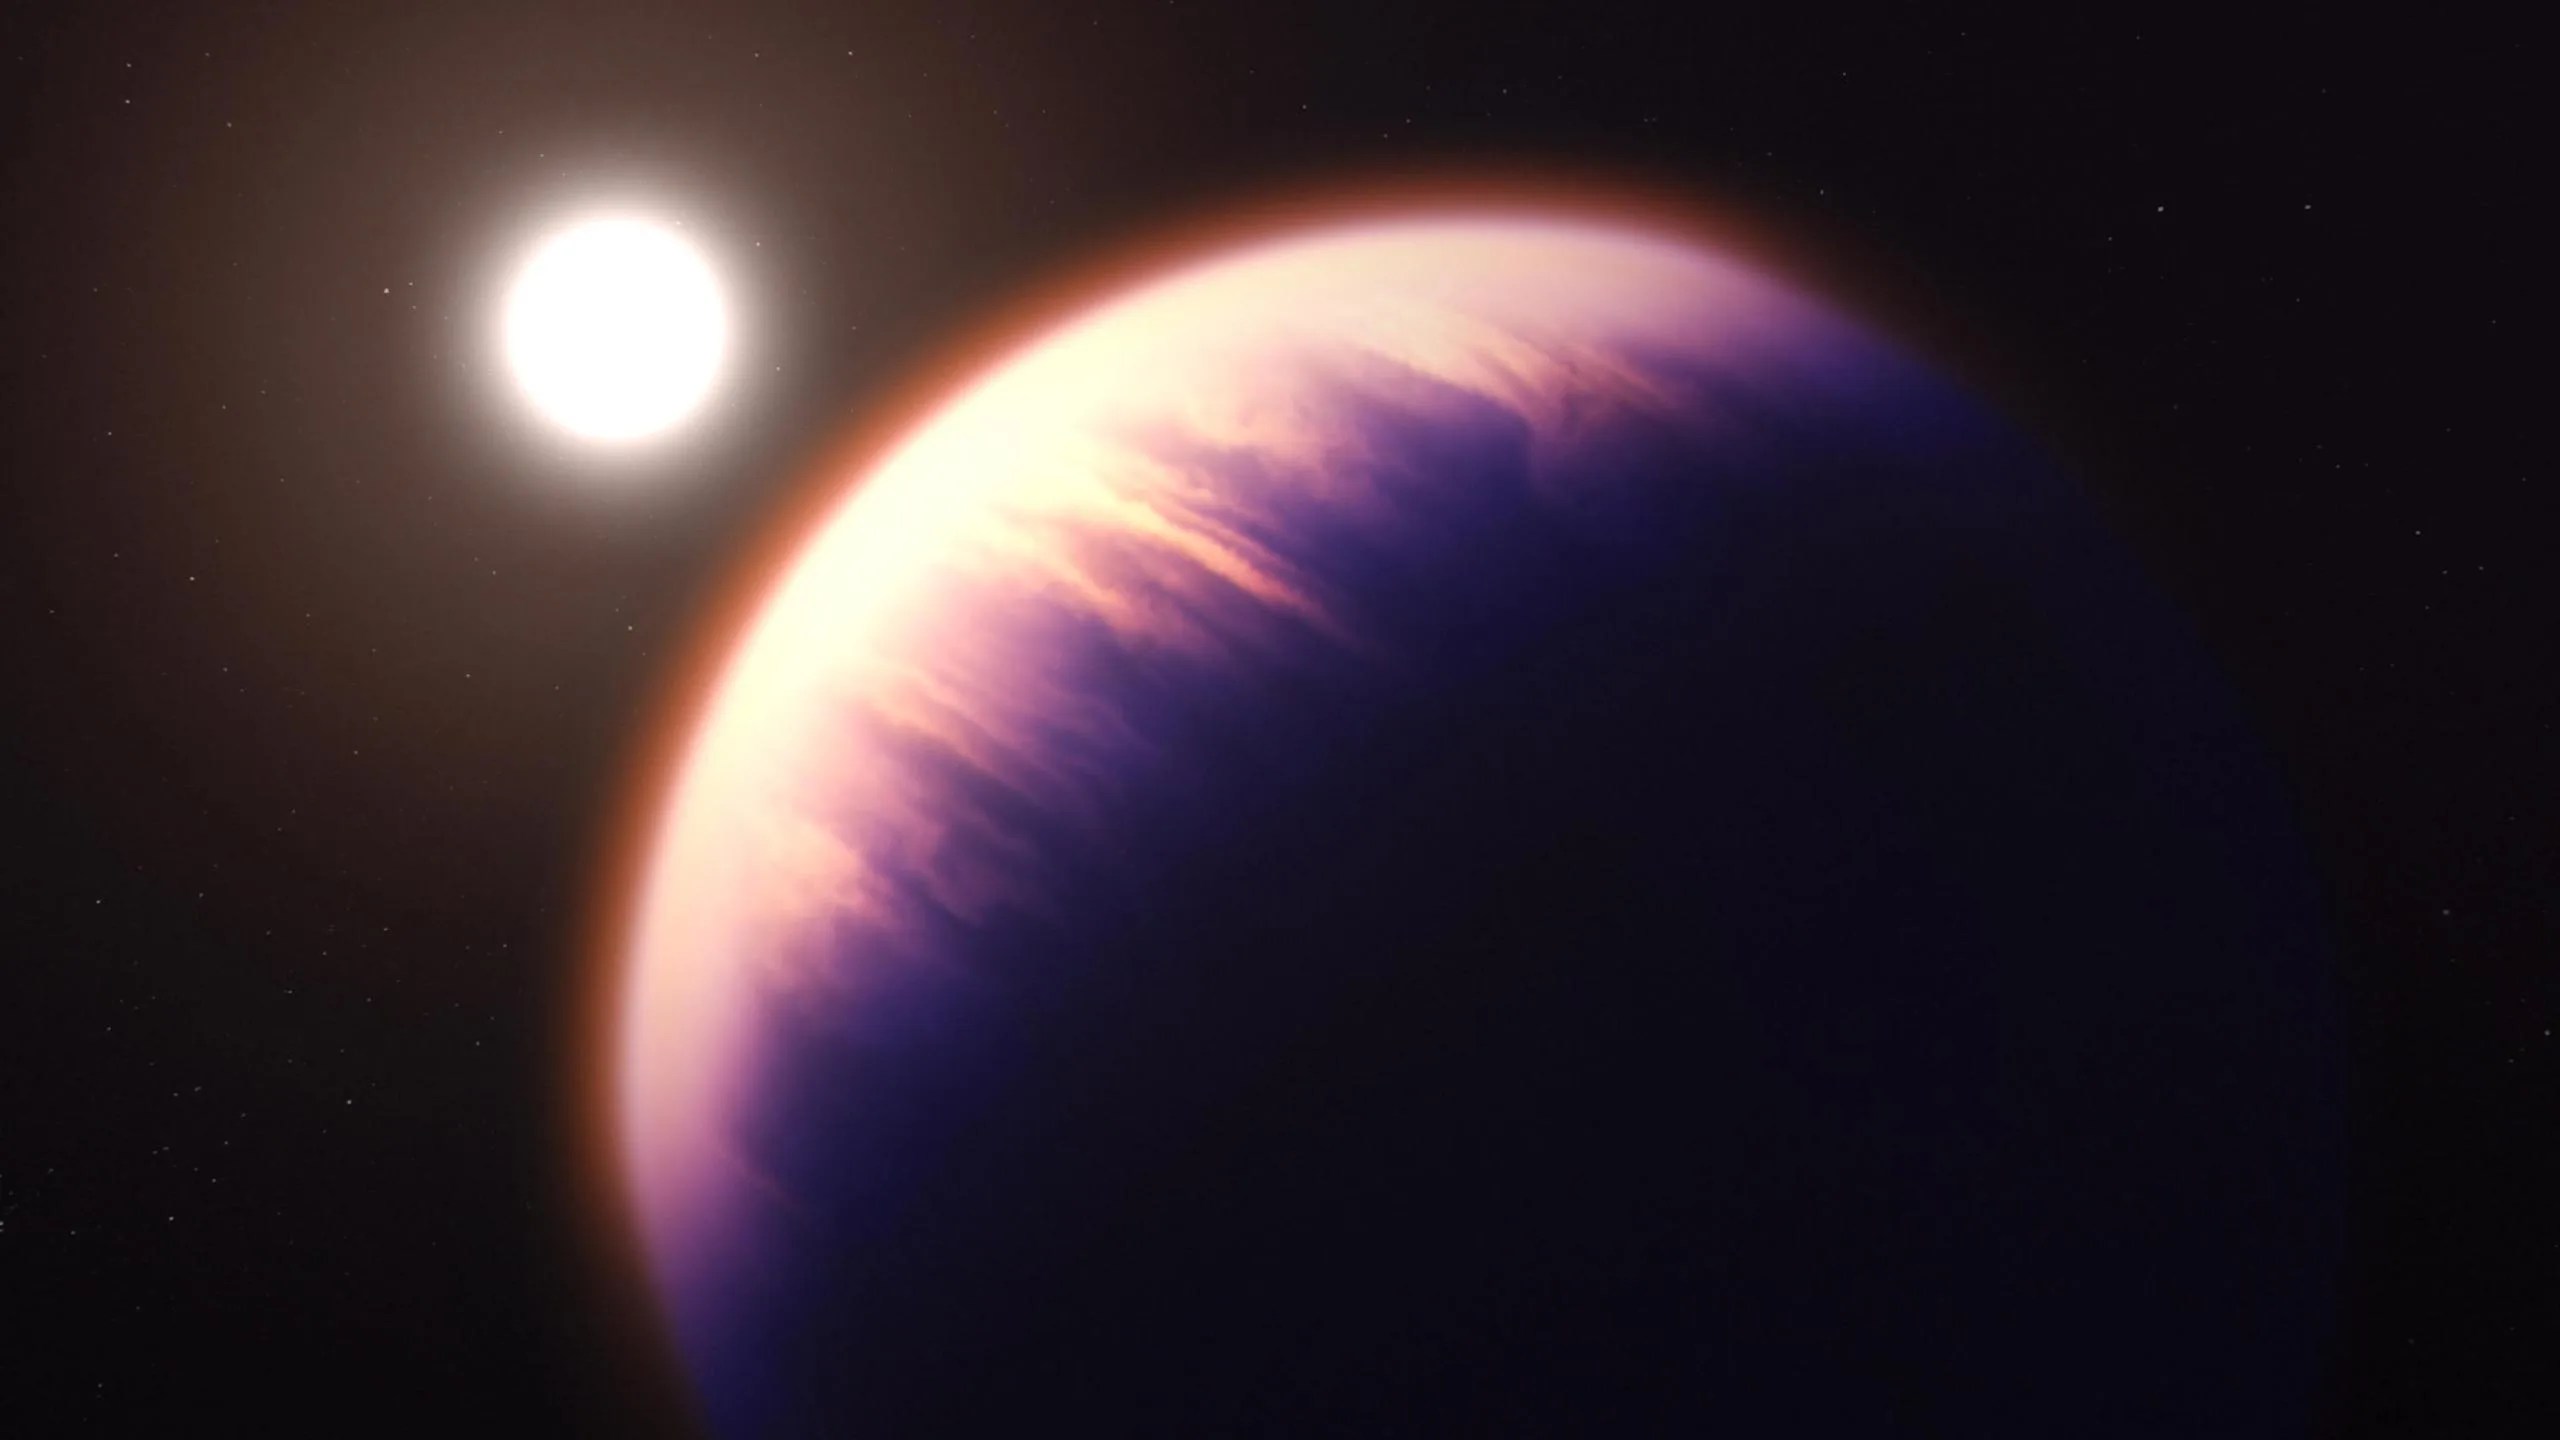 Esta ilustración muestra el aspecto que podría tener el exoplaneta WASP-39 b, según nuestro conocimiento actual del planeta. WASP-39 b aparece en primer plano parcialmente iluminado por su estrella anfitriona, que se ve más pequeña a la distancia, en la mitad superior izquierda de la imagen. El exoplaneta se ve en tonos de lila y rosado. WASP-39 b es un planeta gigante gaseoso, inflado y caliente. La estrella, WASP-39, es un poco más pequeña y menos masiva que el Sol.